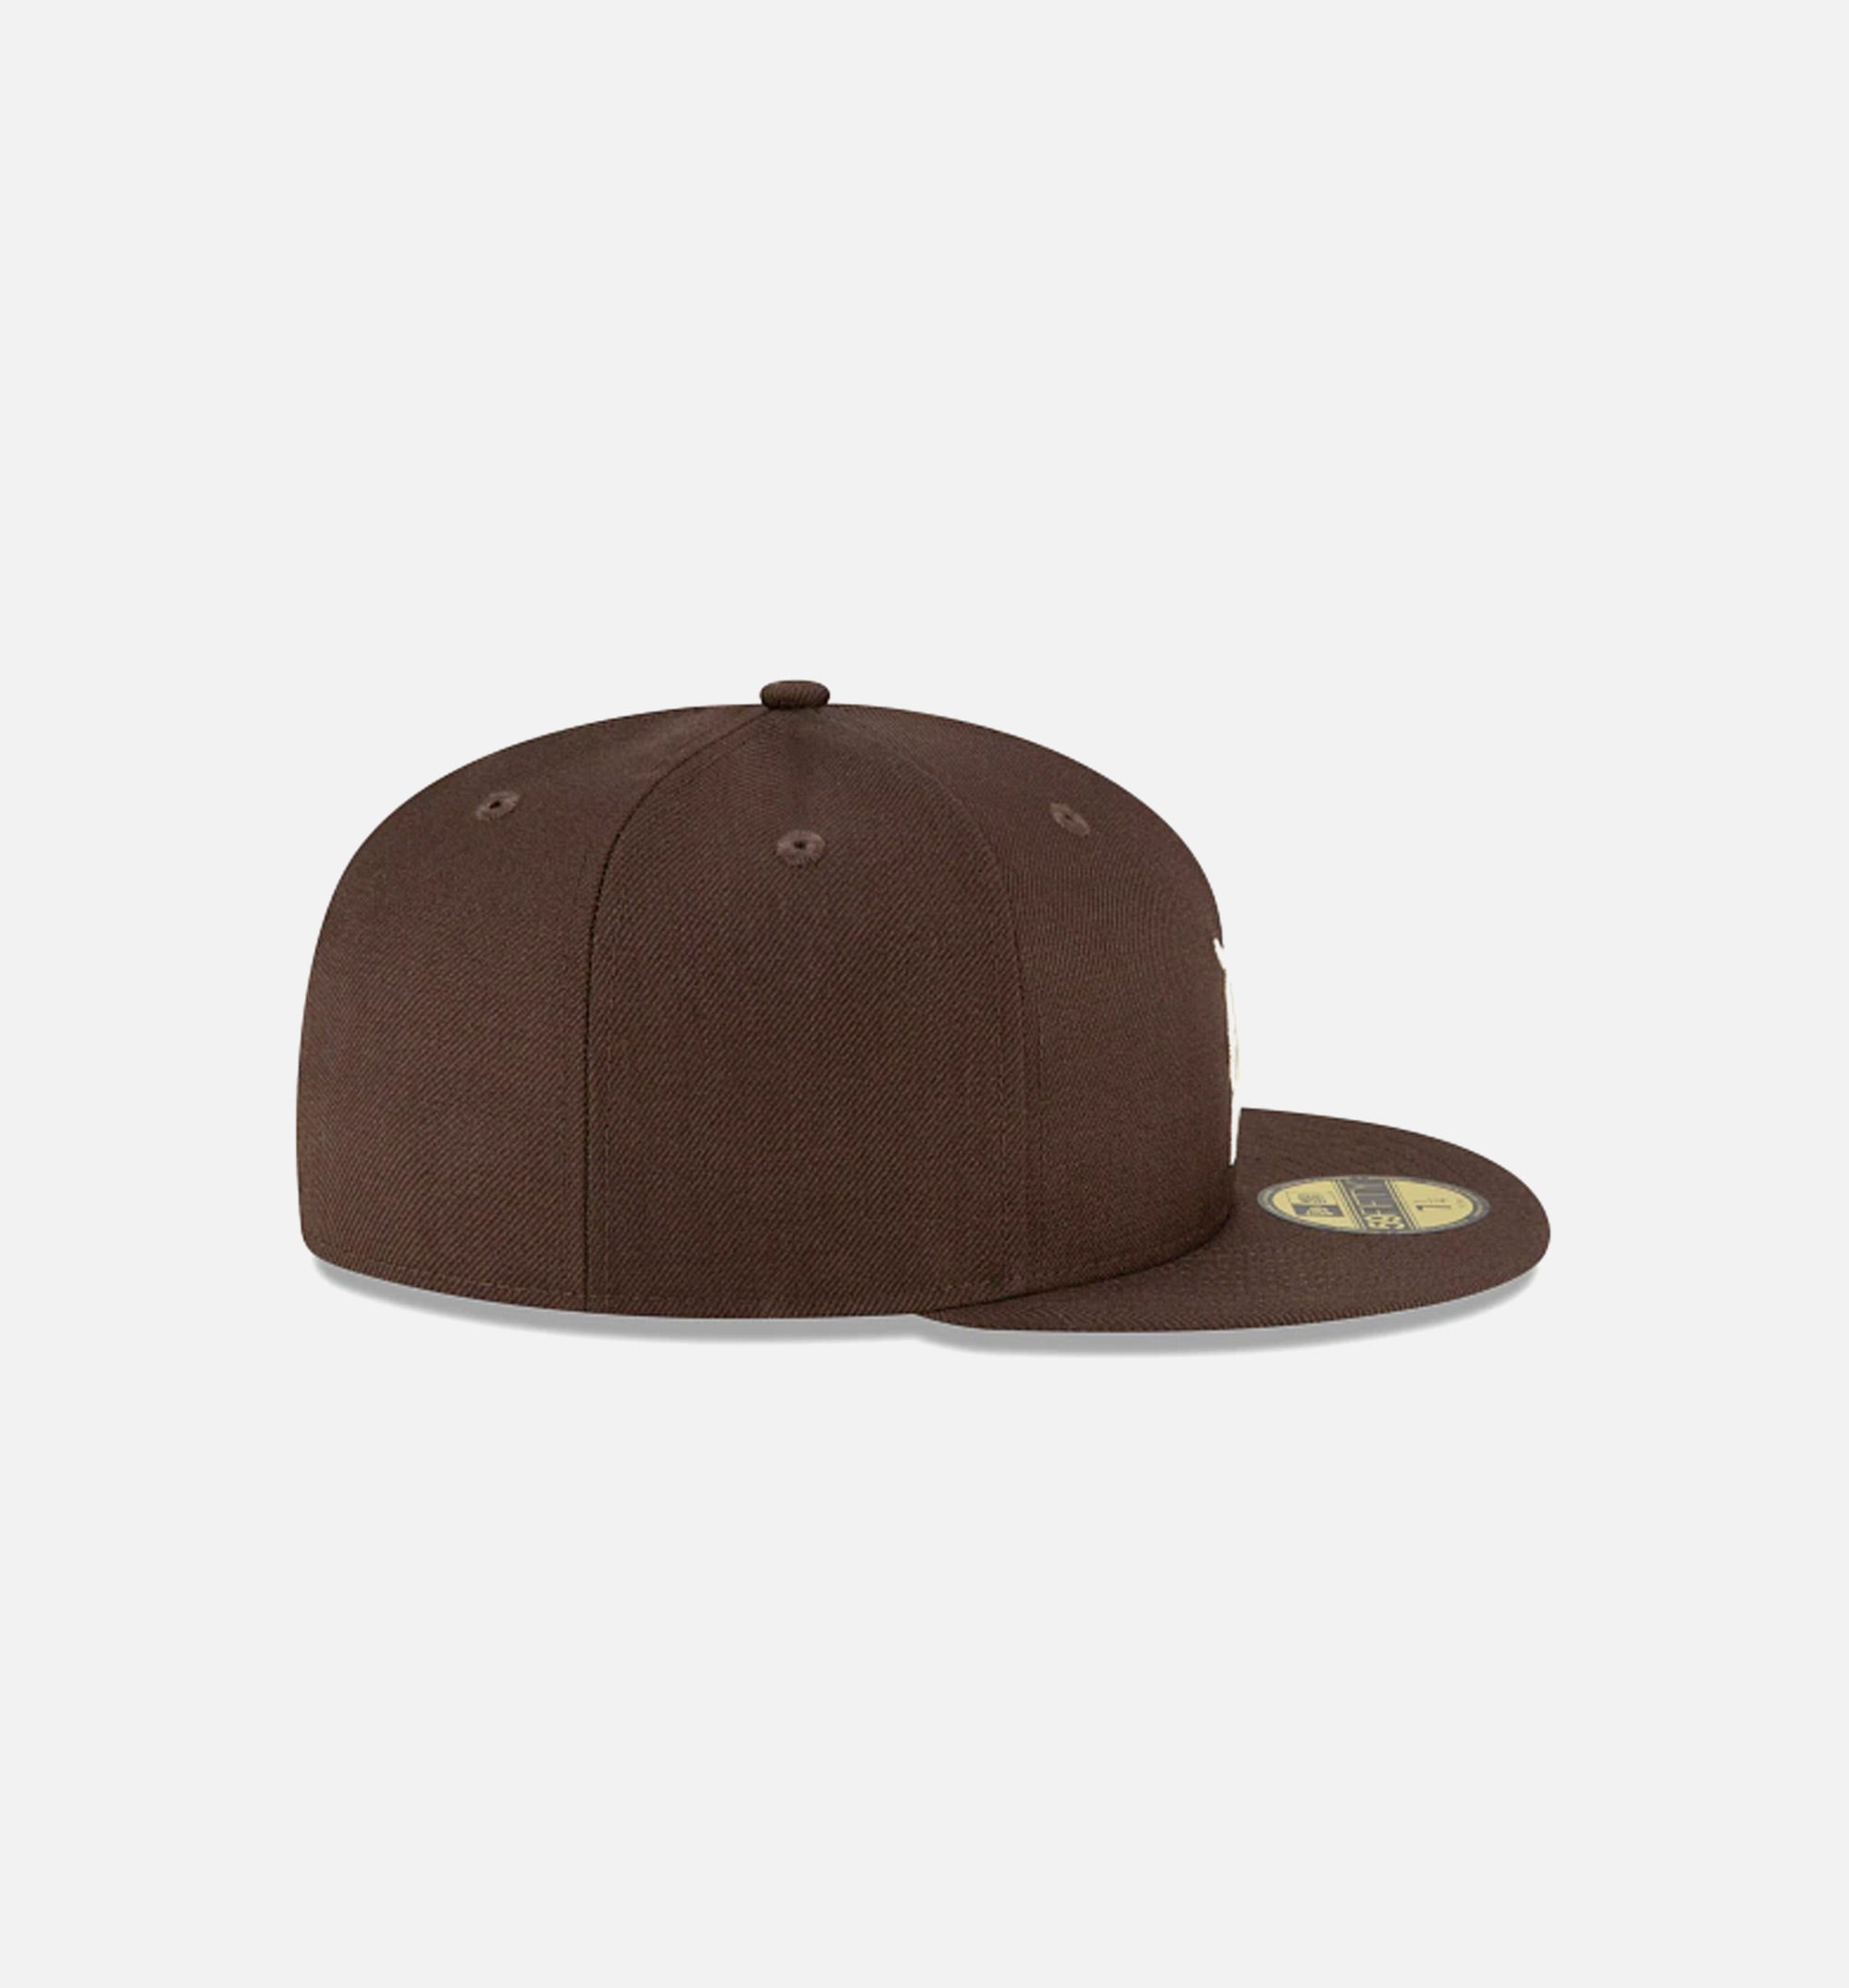 New Era Men's Hat - Brown